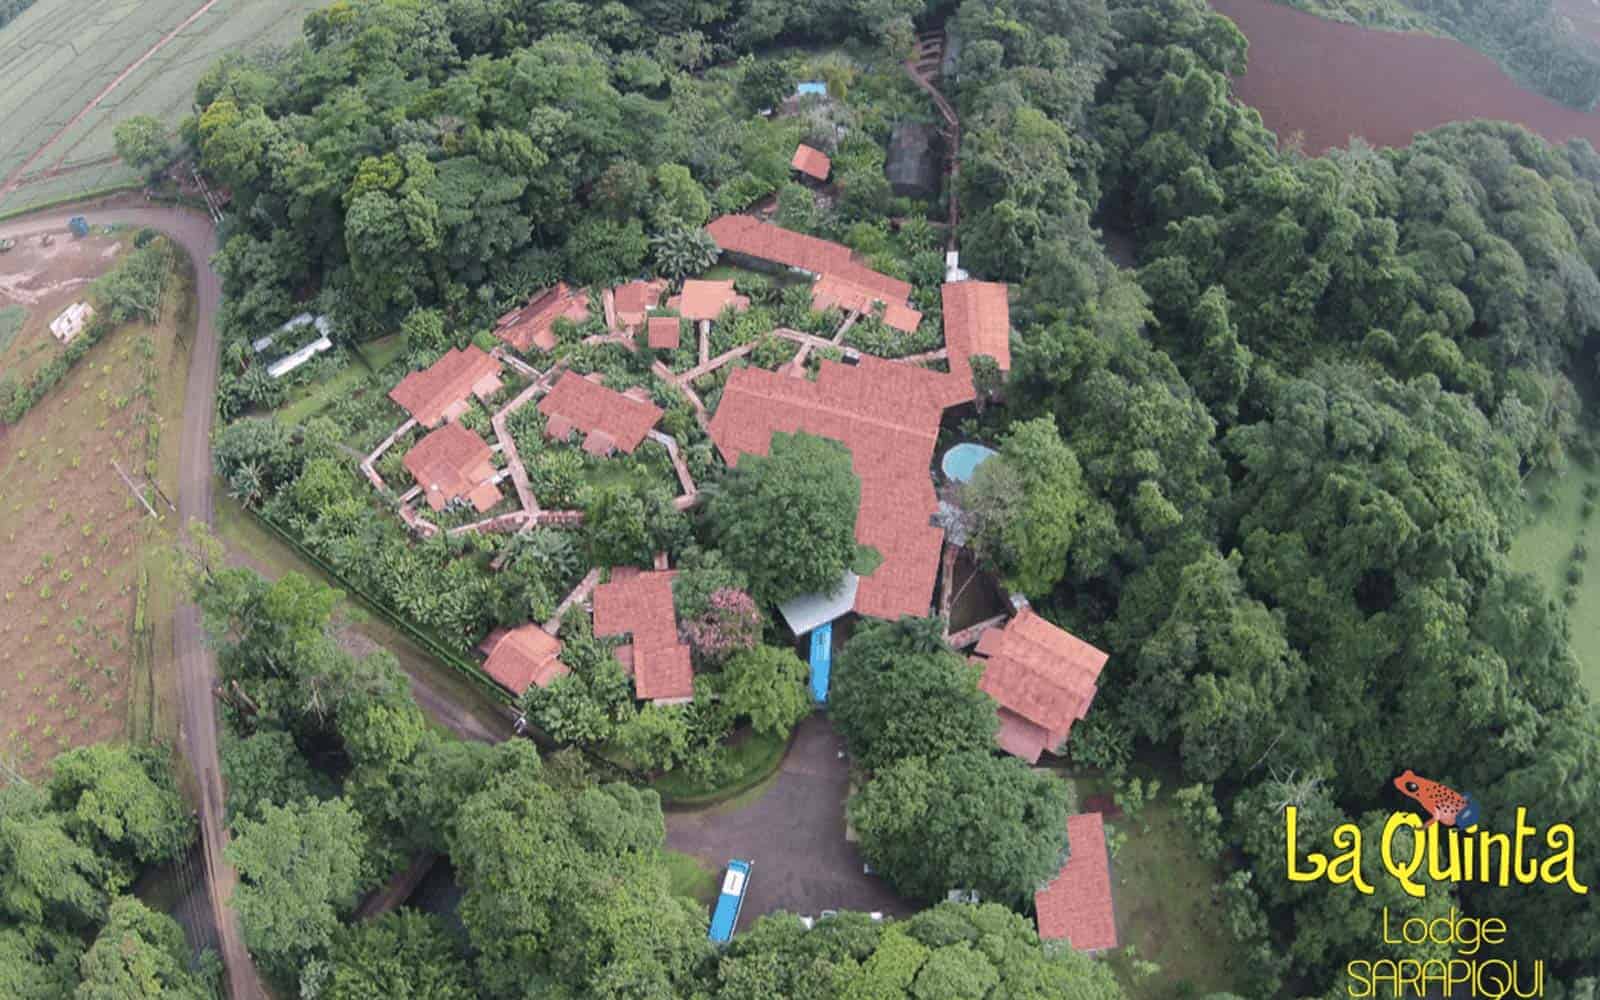 La Quinta de Sarapiqui